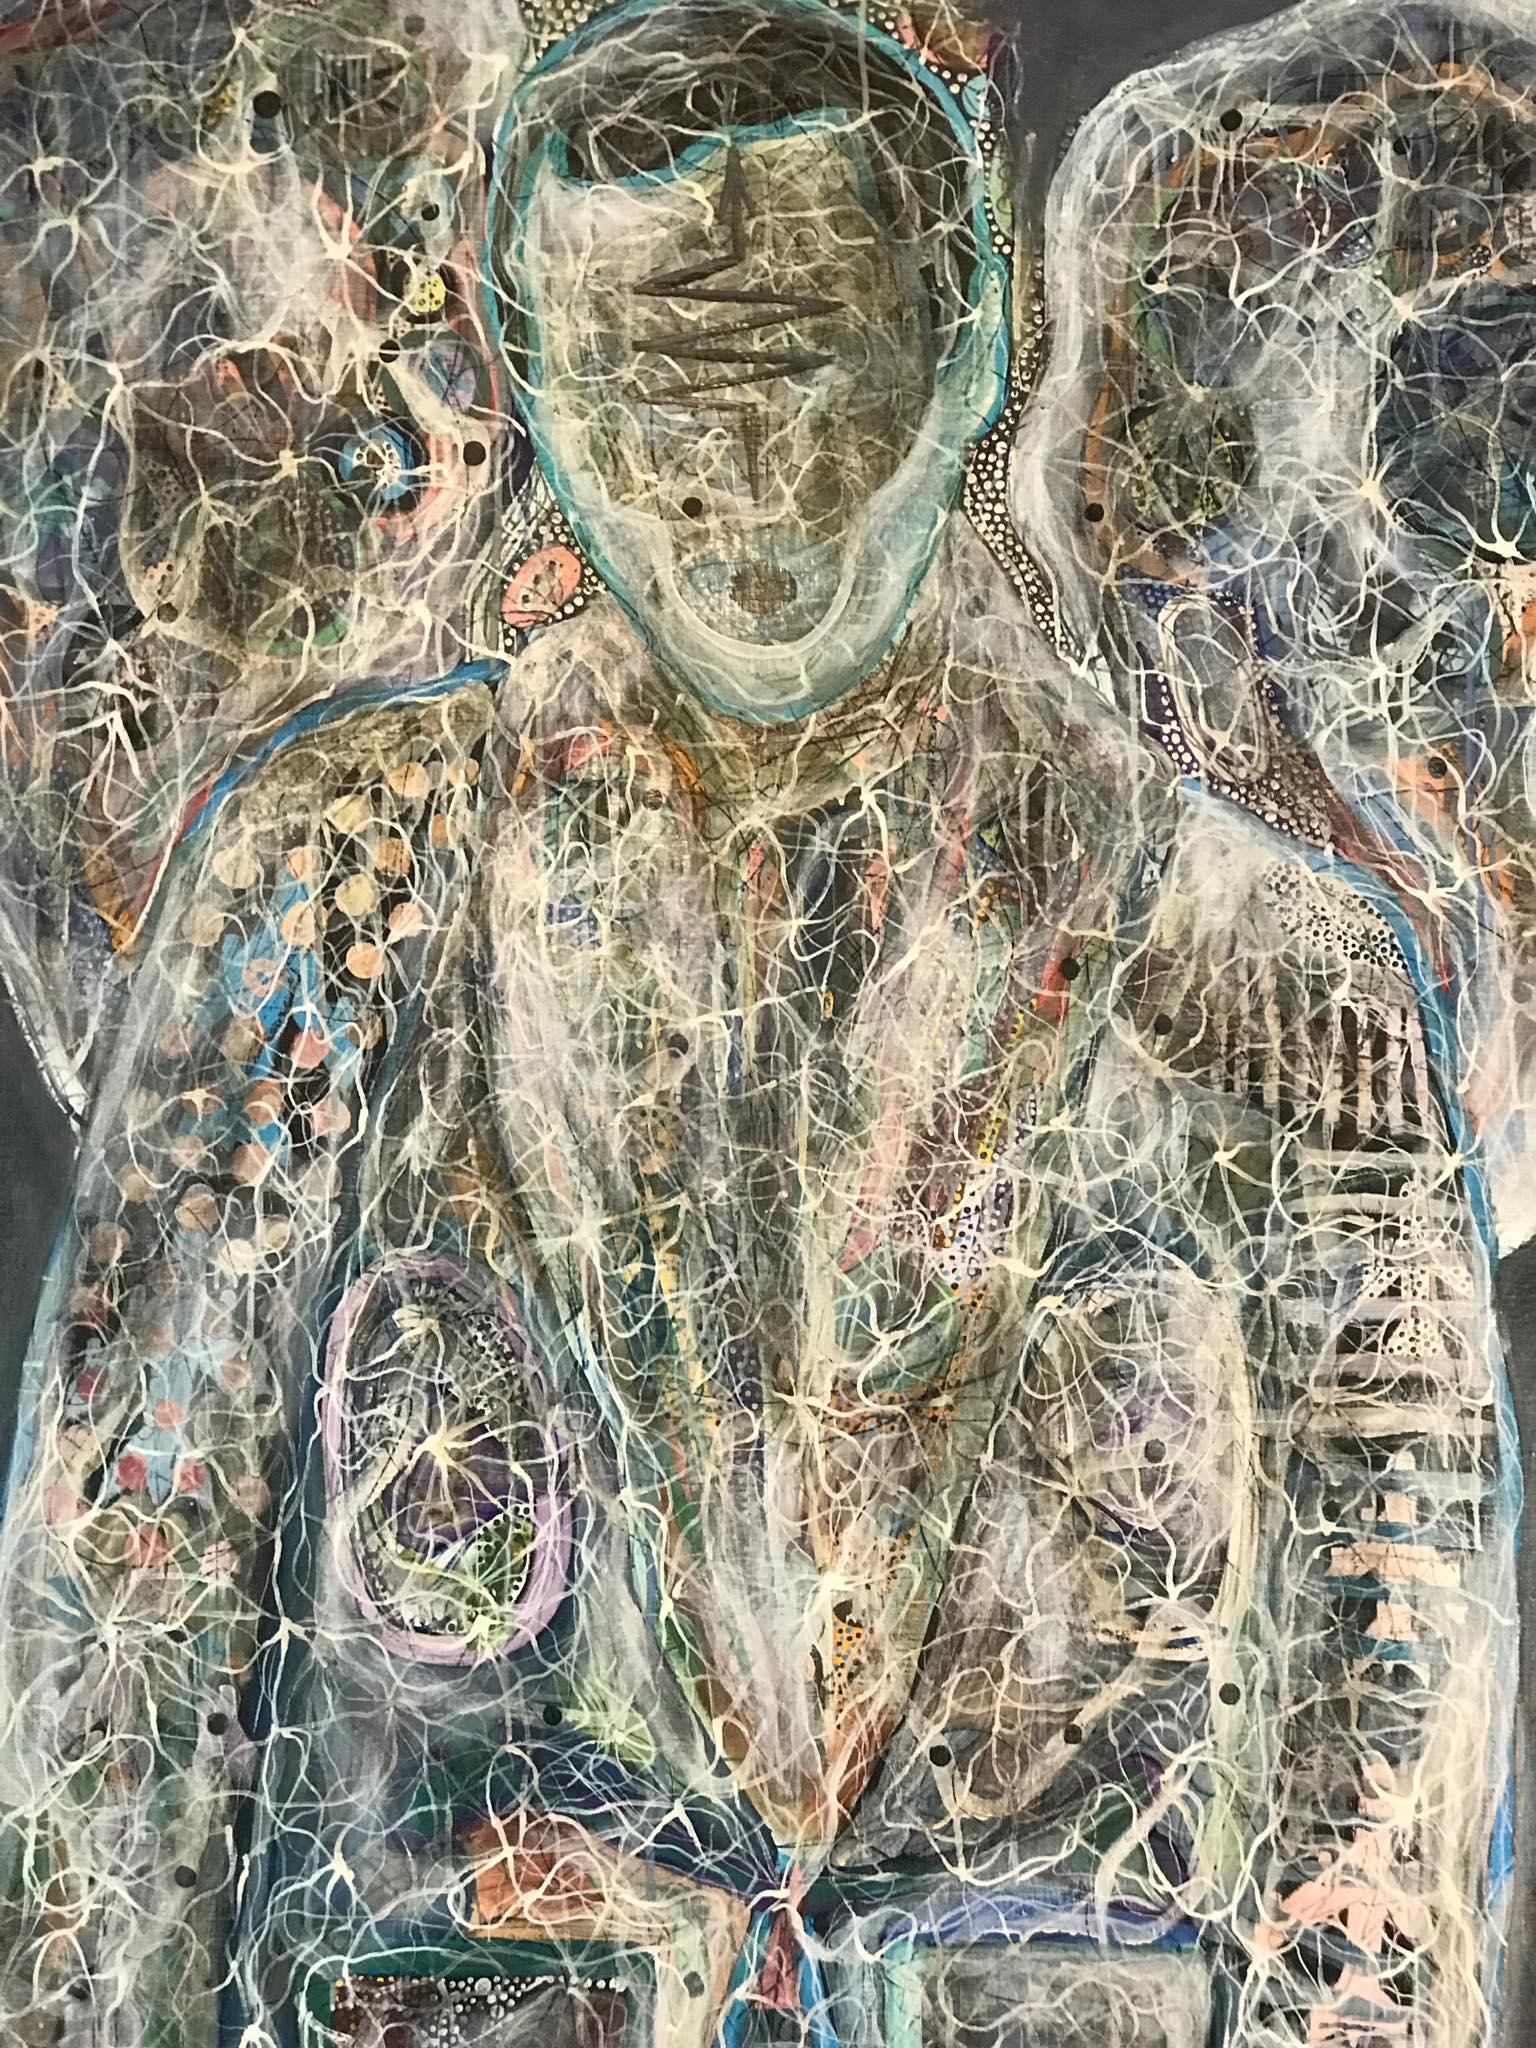 Luminous 170" von Sergey Morshch - abstrakte figurative Malerei, ein Portr�ät eines Engels, eines spirituellen Wesens. Die surrealistische Darstellung der Realität auf der Grundlage von Energiefeldern ist das Hauptthema der konzeptionellen Arbeiten